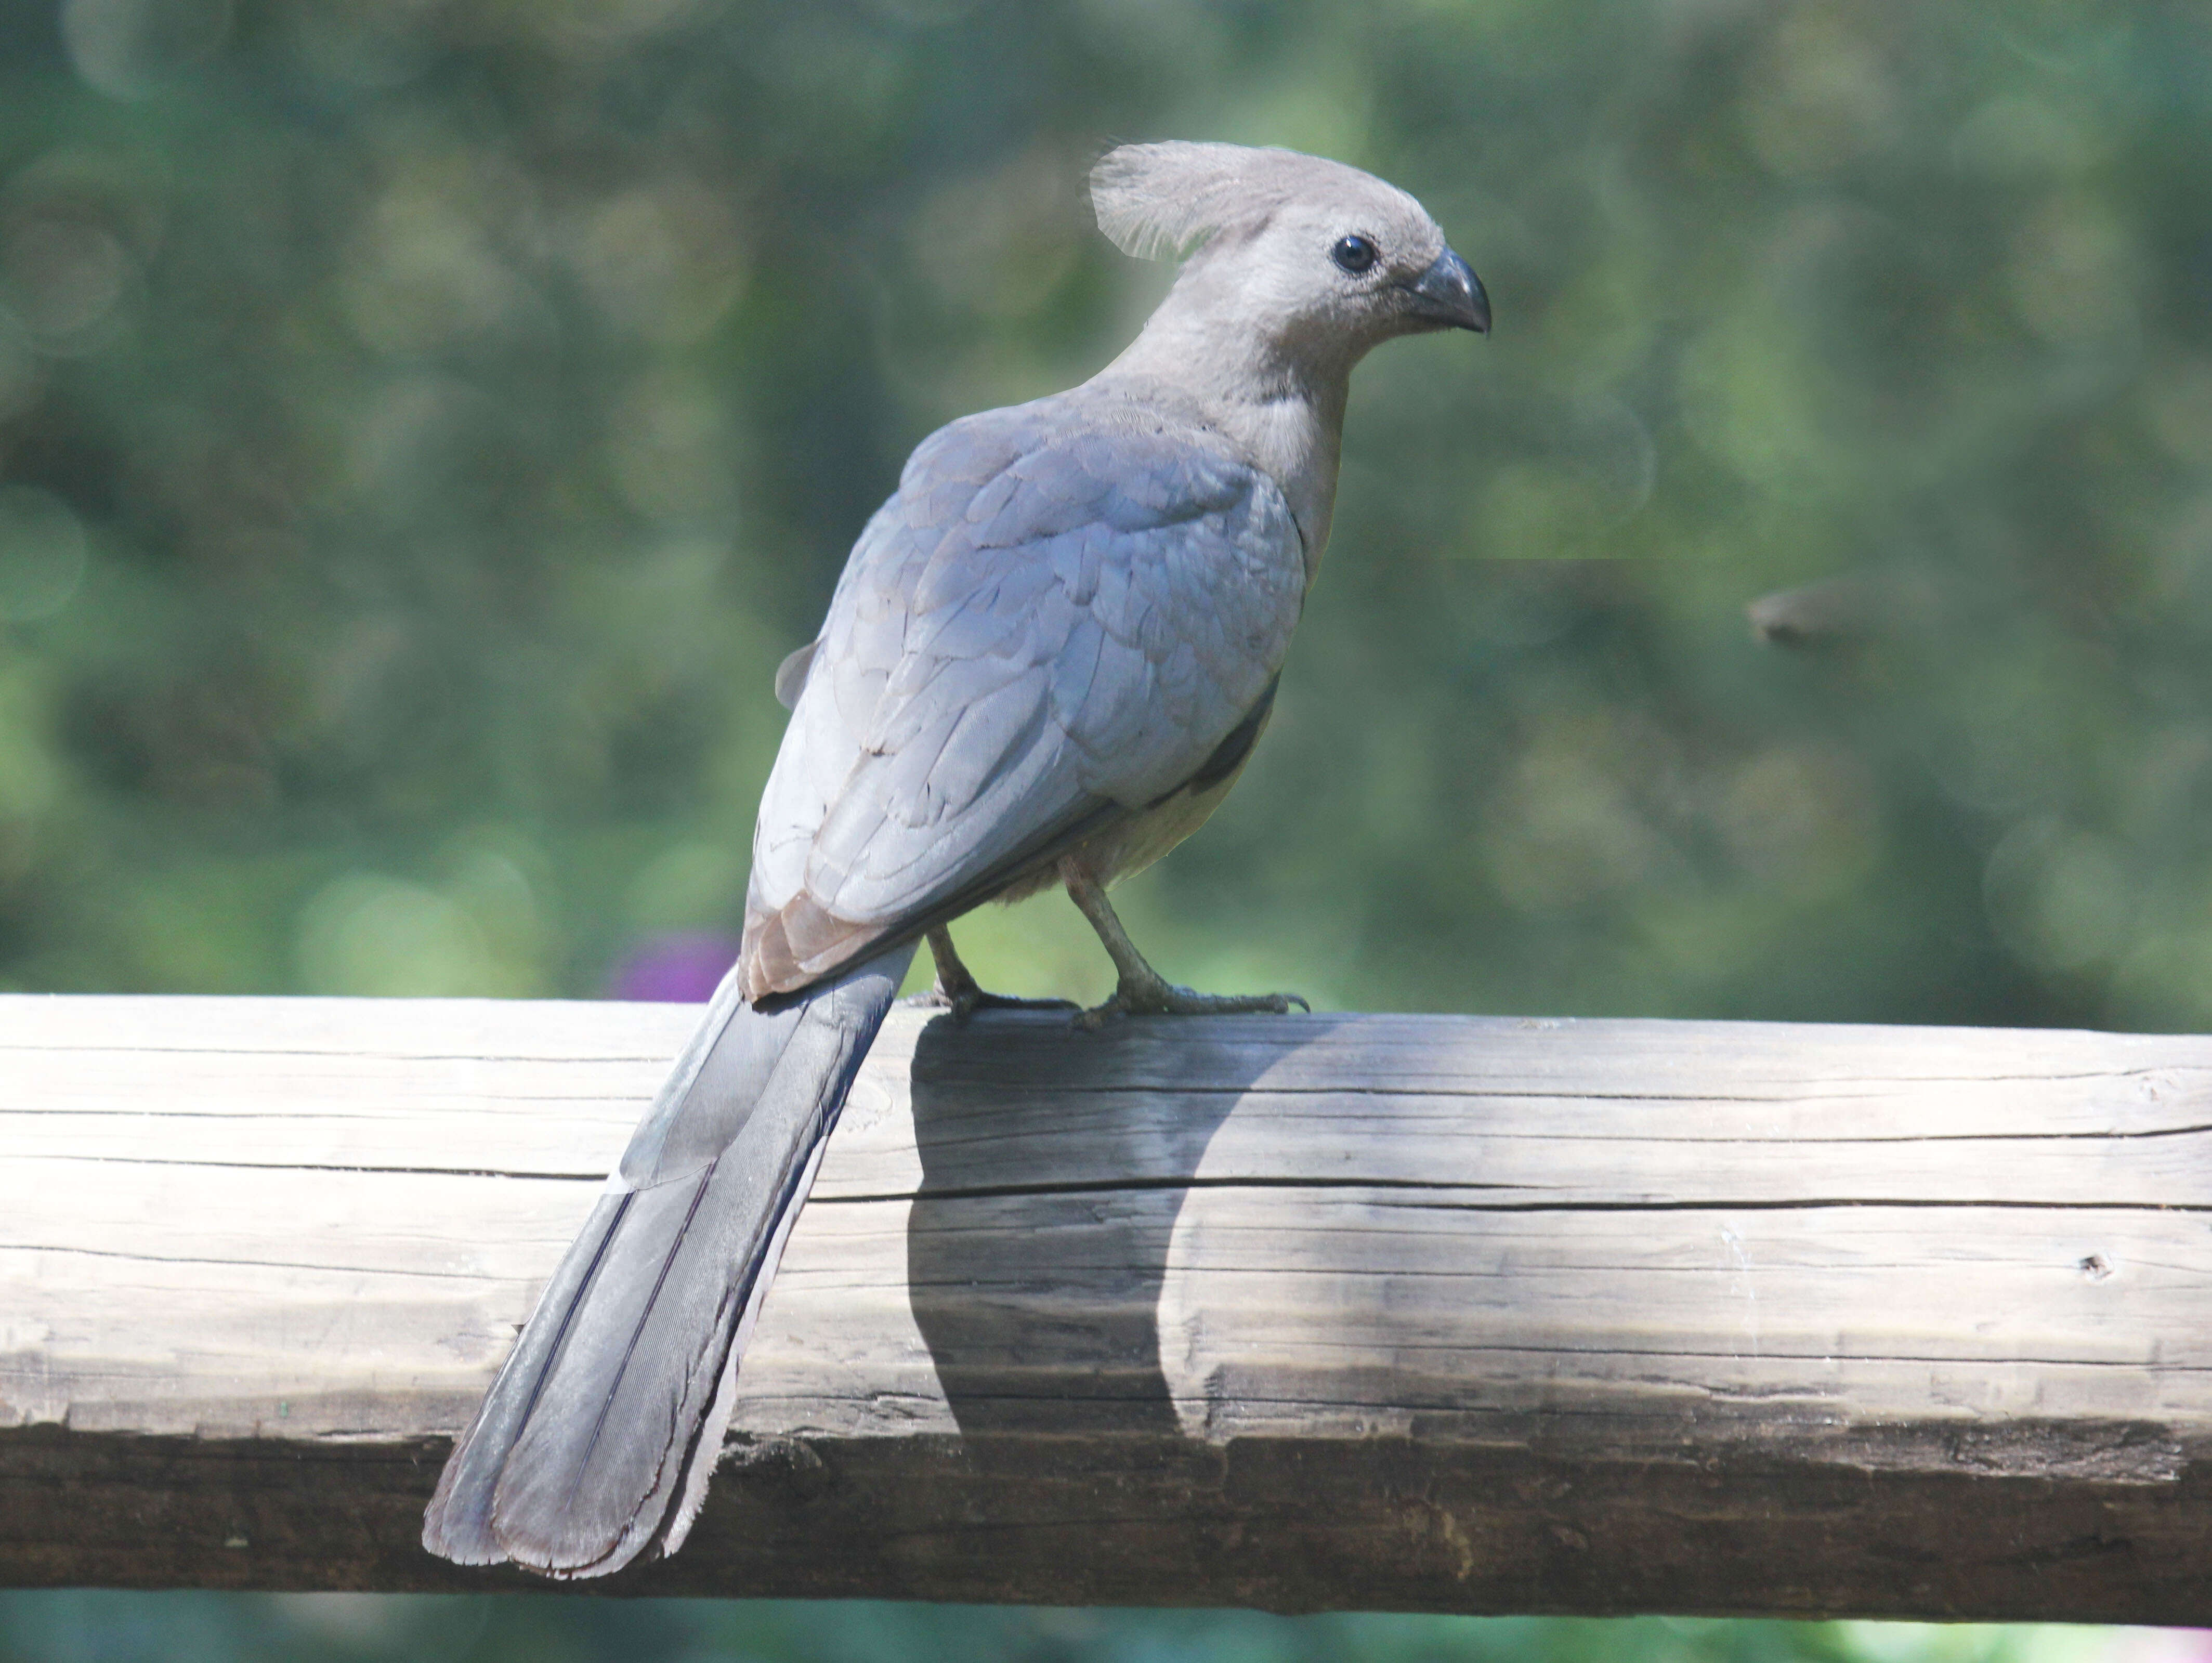 Image of Grey Go-away-bird